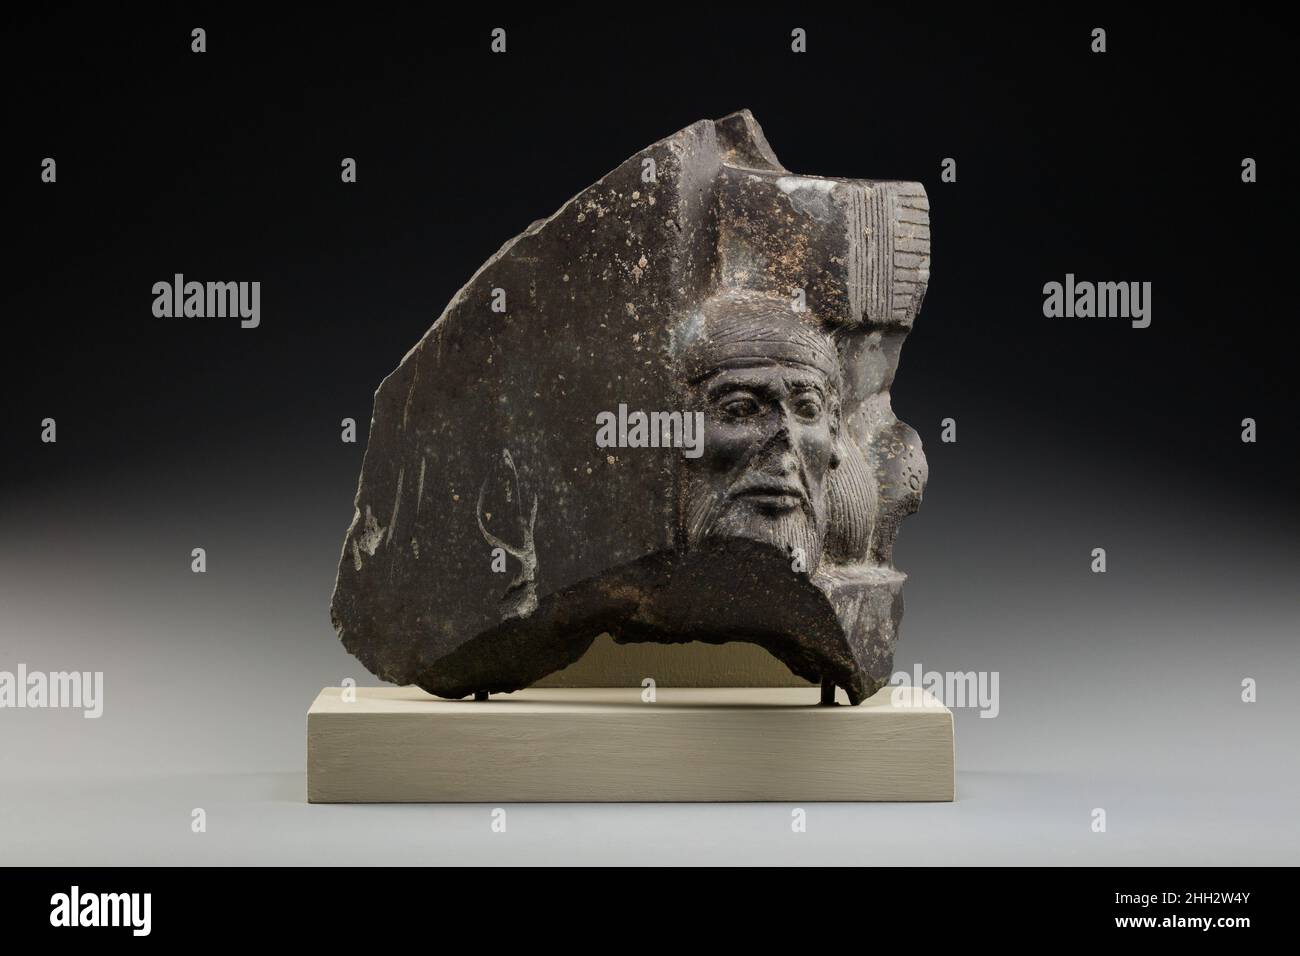 Fragment einer skulpturierten Statue, die einen asiatischen Gefangenen darstellt, ca. 1300–1250 v. Chr. Neues Königreich, Ramesside die Macht des pharao wurde von alten ägyptischen Künstlern durch eine Vielzahl von Bildern zum Ausdruck gebracht. Eines davon ist das Bild des pharao, der über den Leichen von ausländischen Gefangenen steht oder thront. Dieses Fragment eines Standbildes zeigt Kopf und Schulter eines Syrers, der durch lange Haarsträhnen gekennzeichnet ist, die von einem Stirnband, einem Bart und Schnurrbart und einem mit Rosetten bestickten Fransenmantel umrandet sind. Die komplette Figur lag flach auf seinem Bauch, sein Rücken durch die Schilfmatte gedrückt, auf der Stockfoto